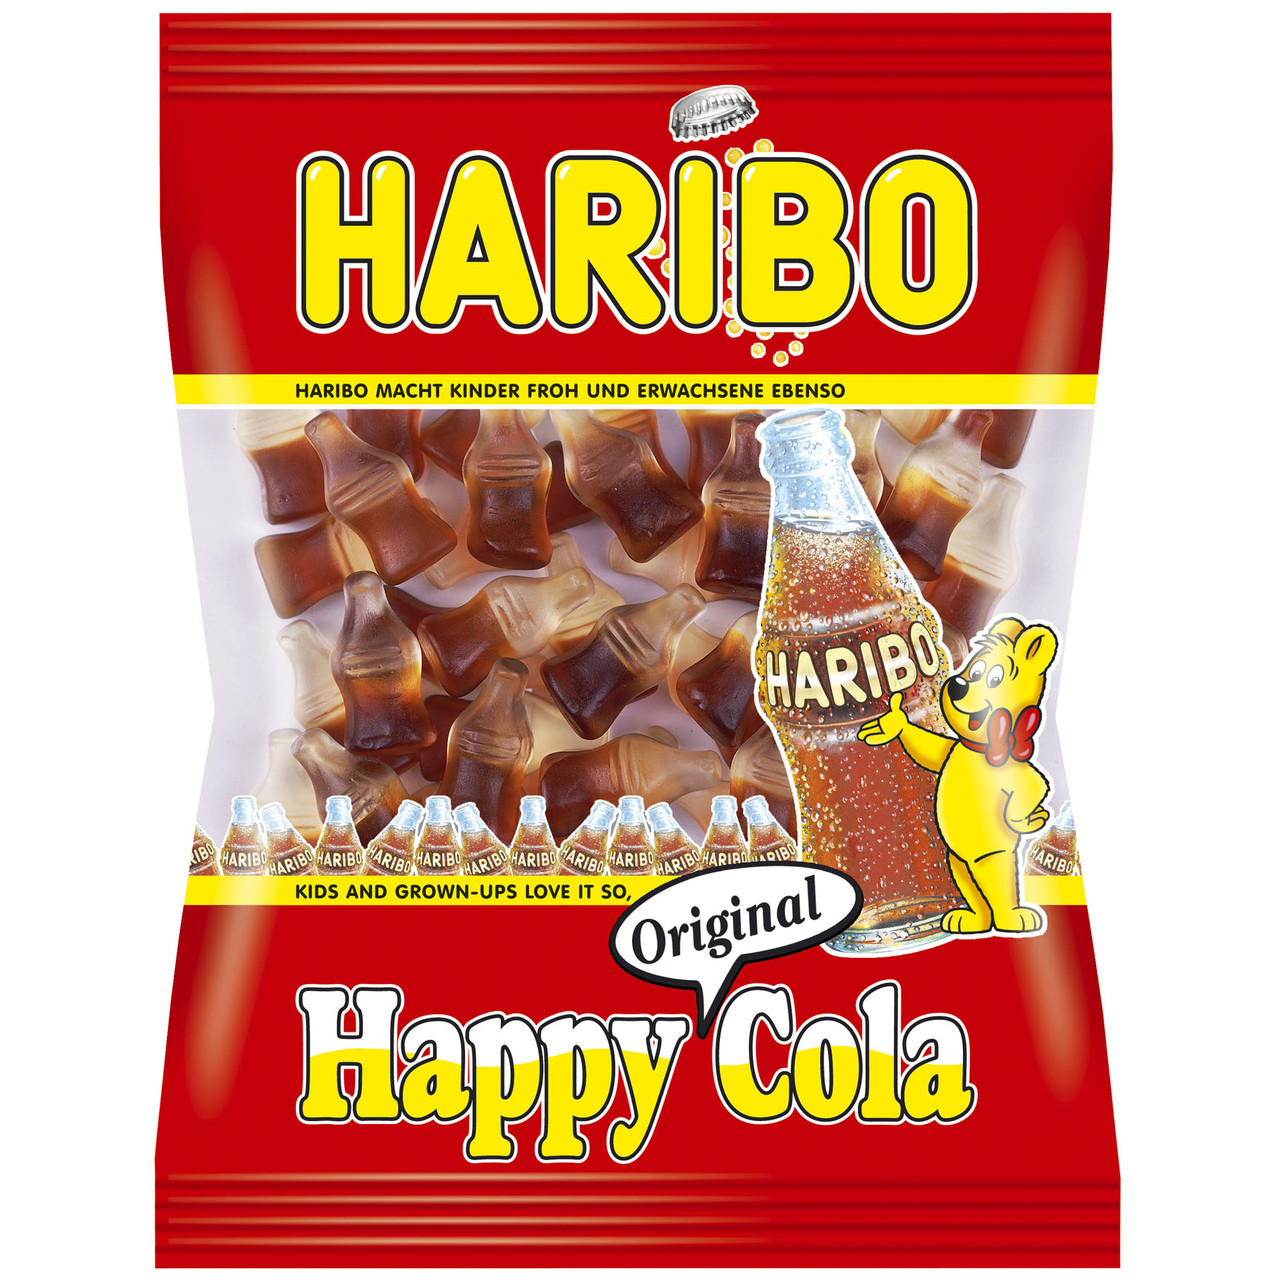 Haribo Happy Cherries 5oz Bag